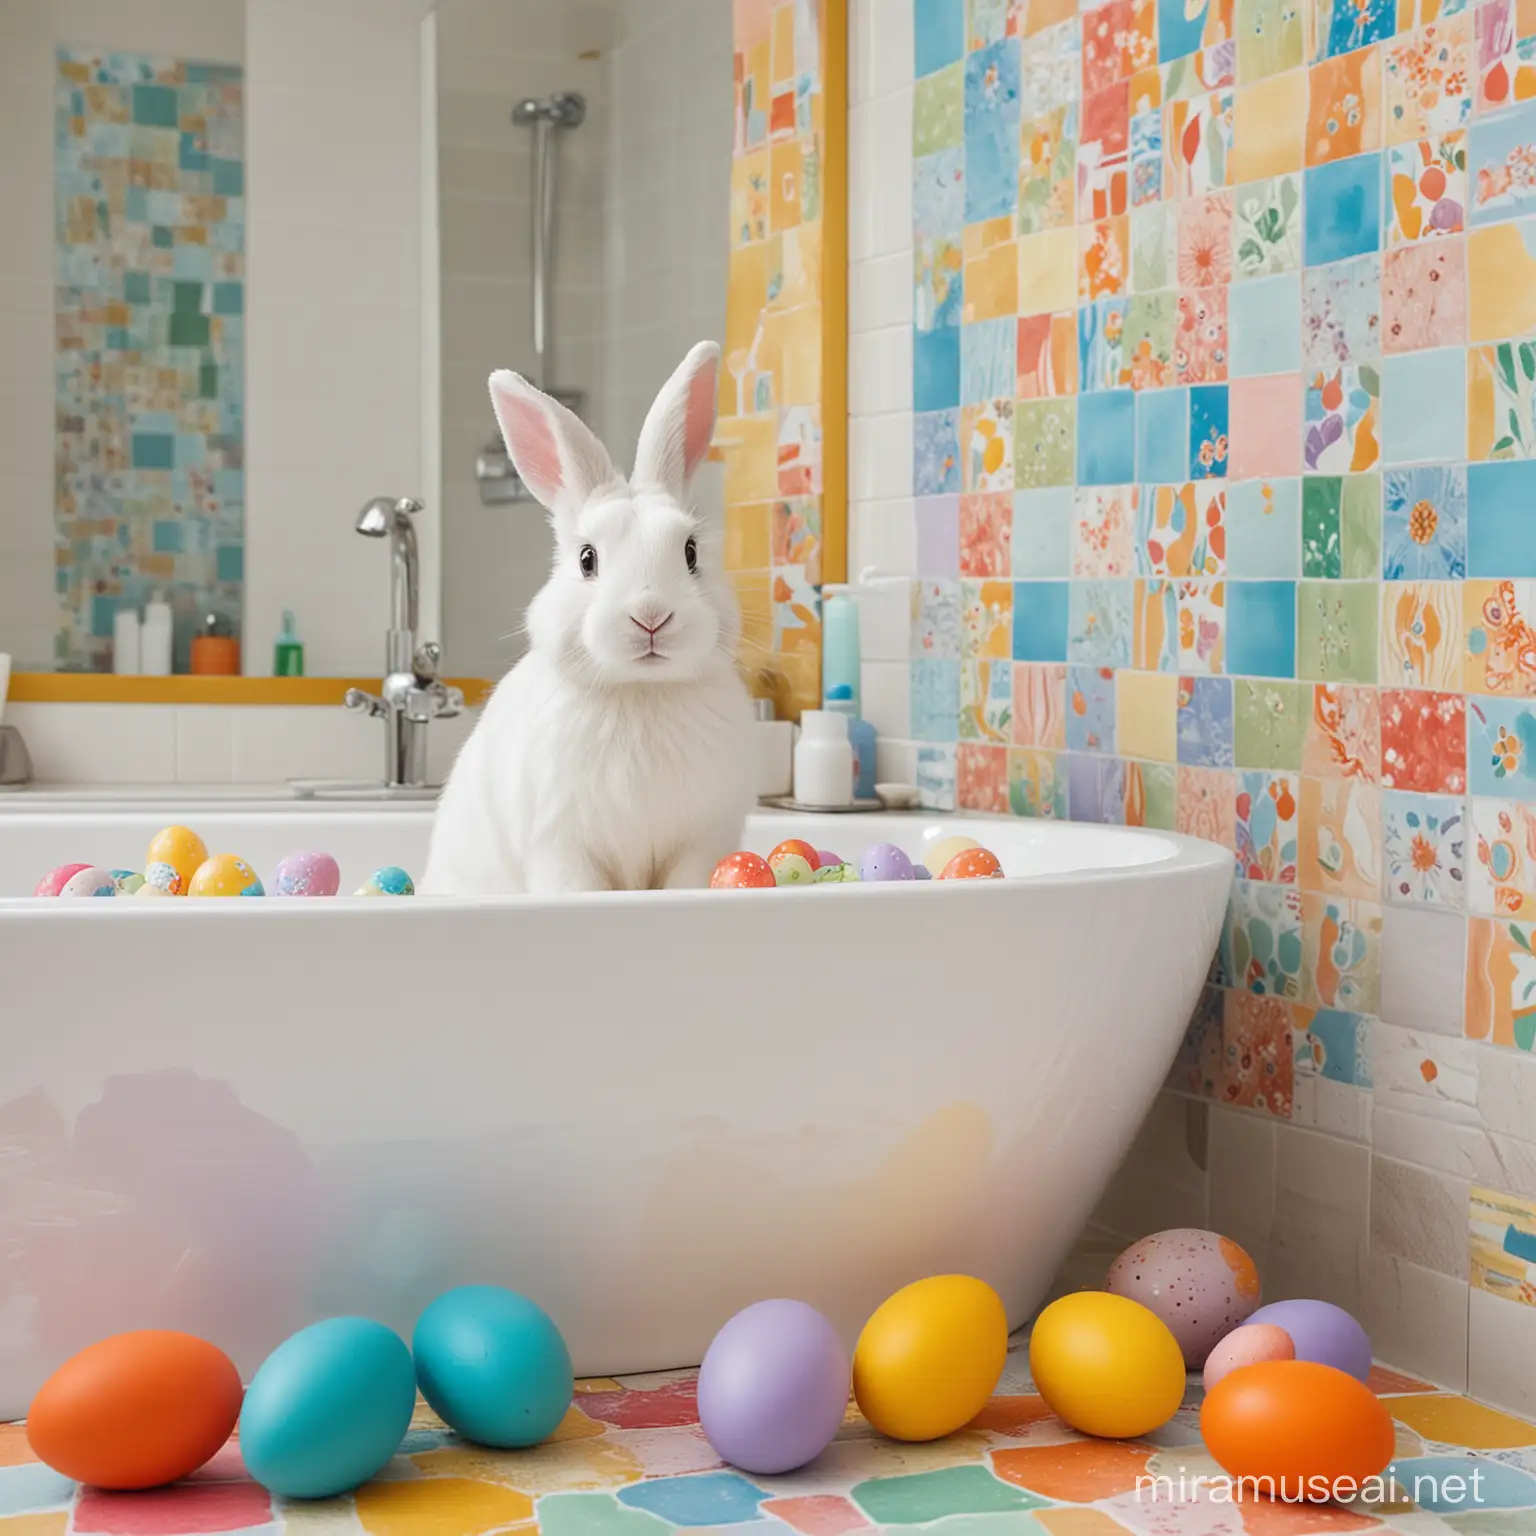 Ostern mit einem Osterhasen und bunten Ostereiern  im bunt gefliesten Badezimmer